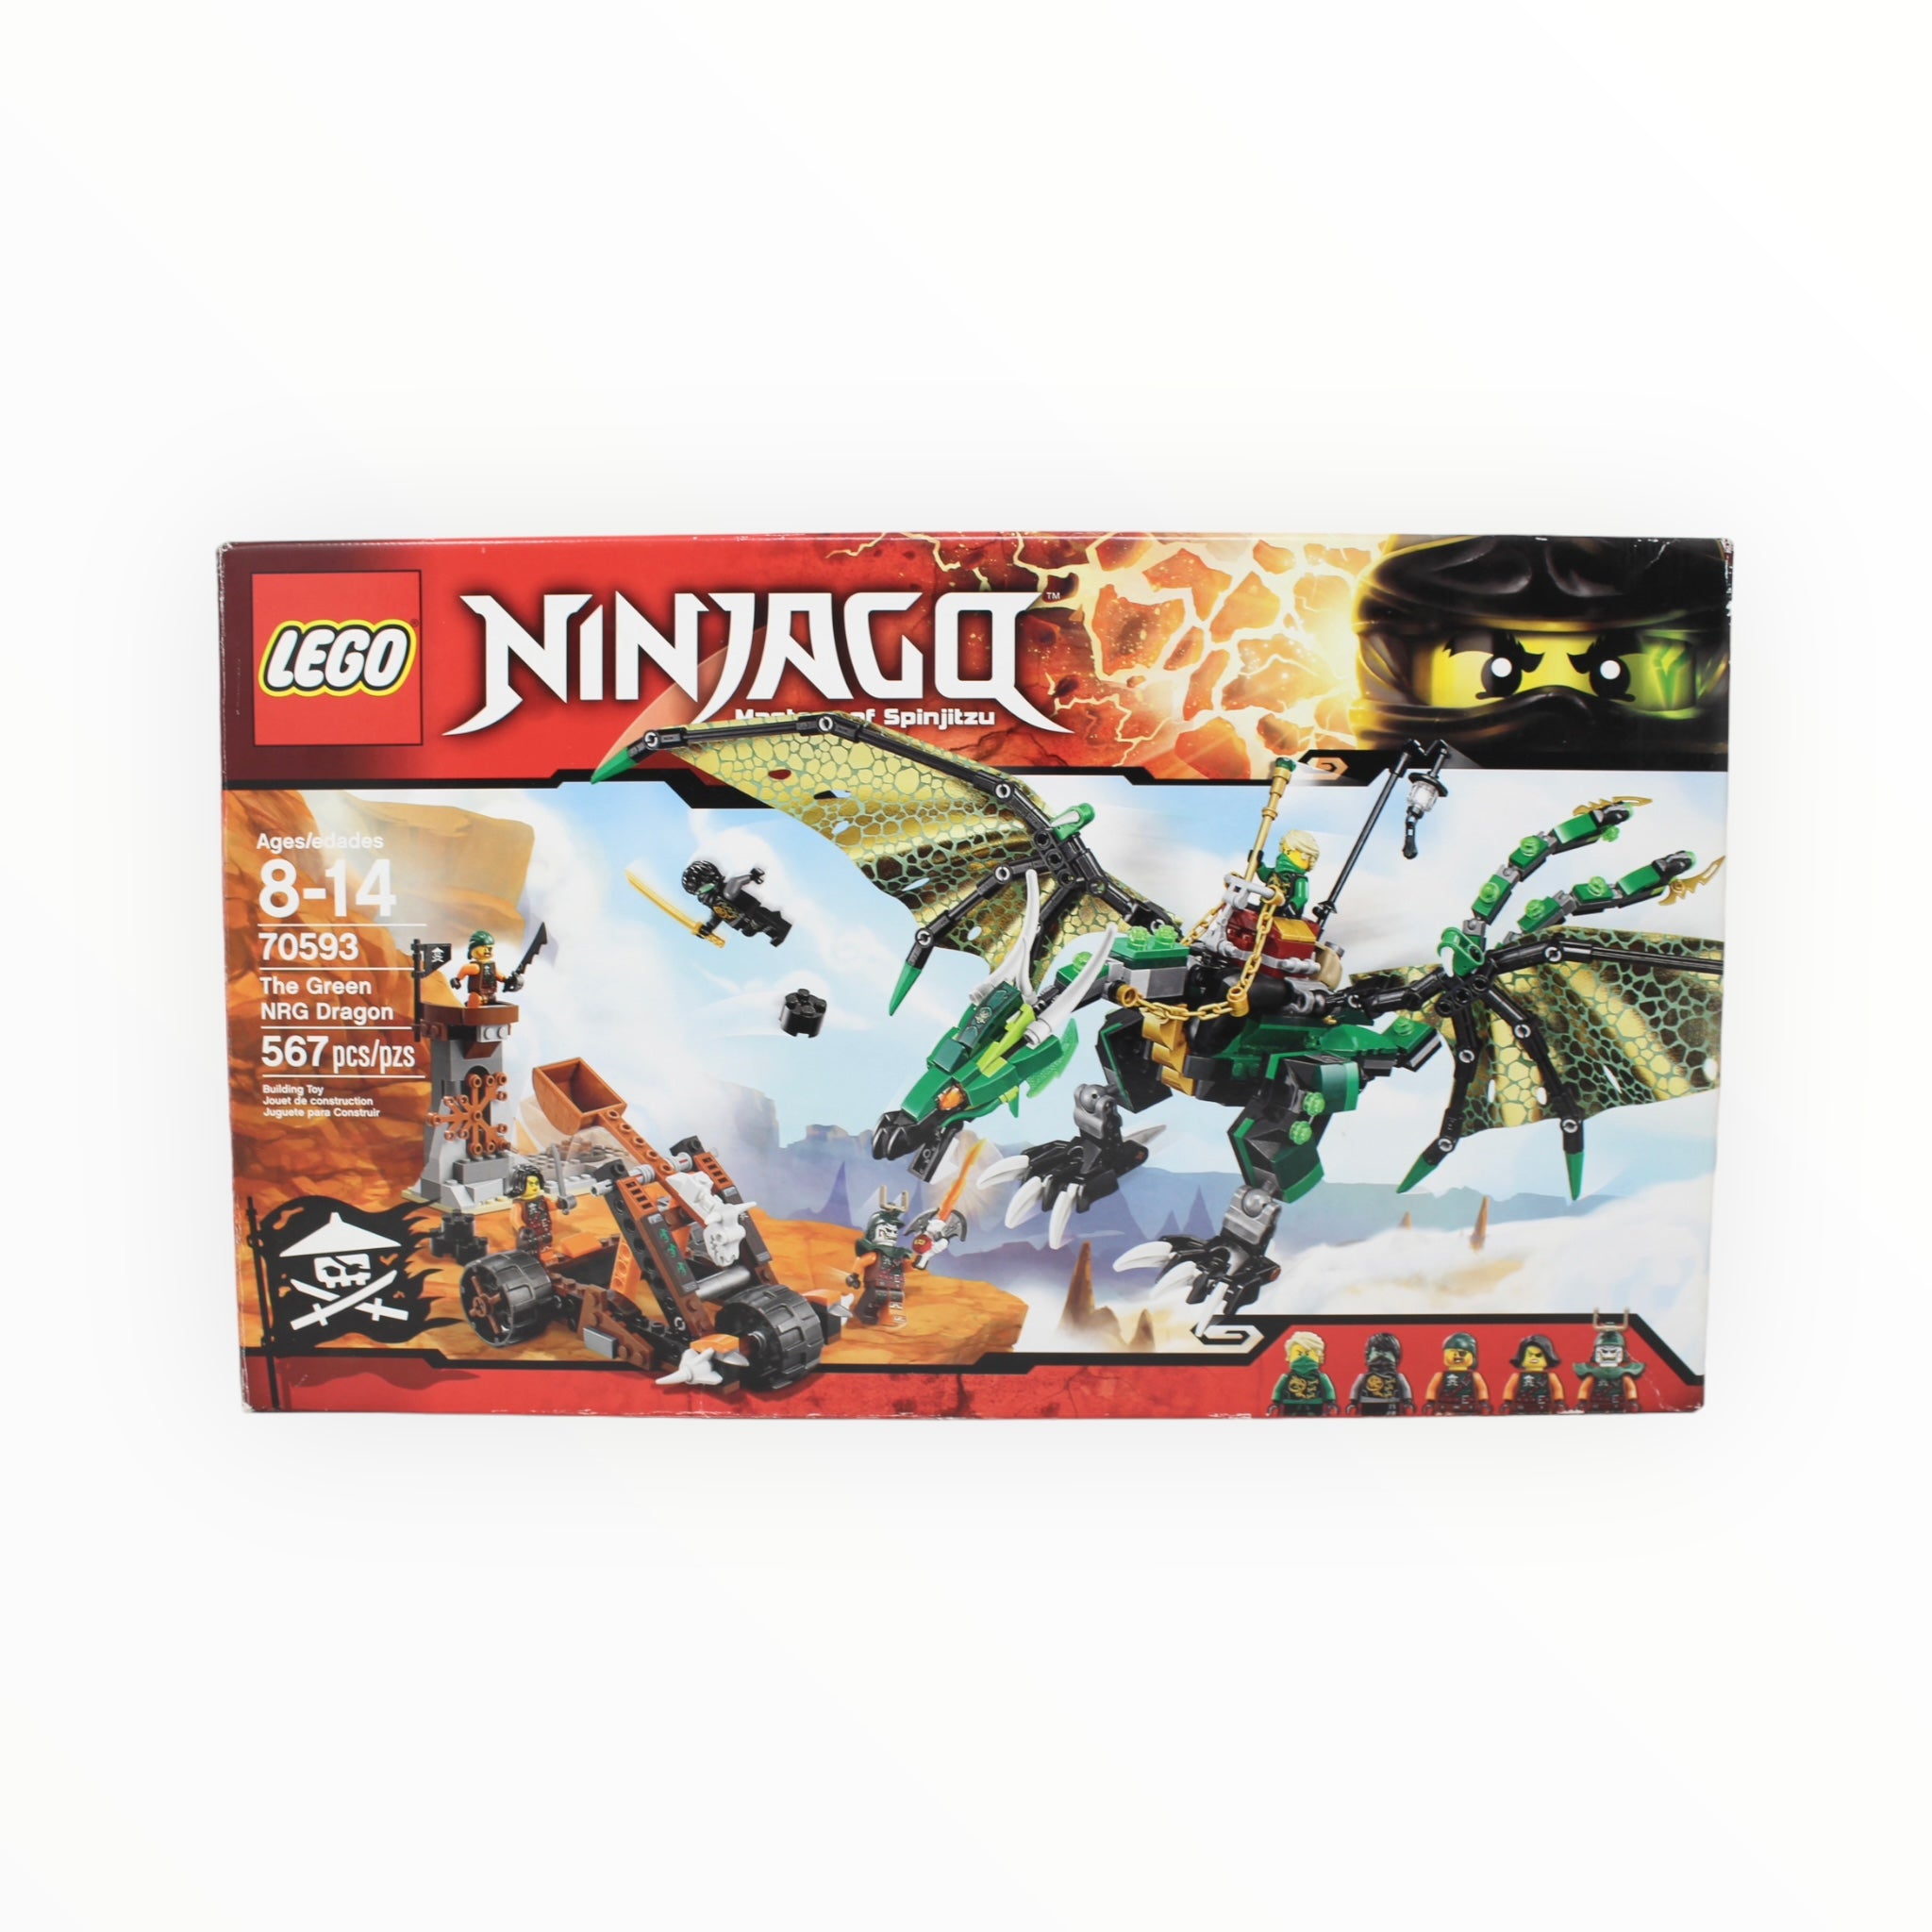 Certified Used Set 70593 Ninjago The Green NRG Dragon